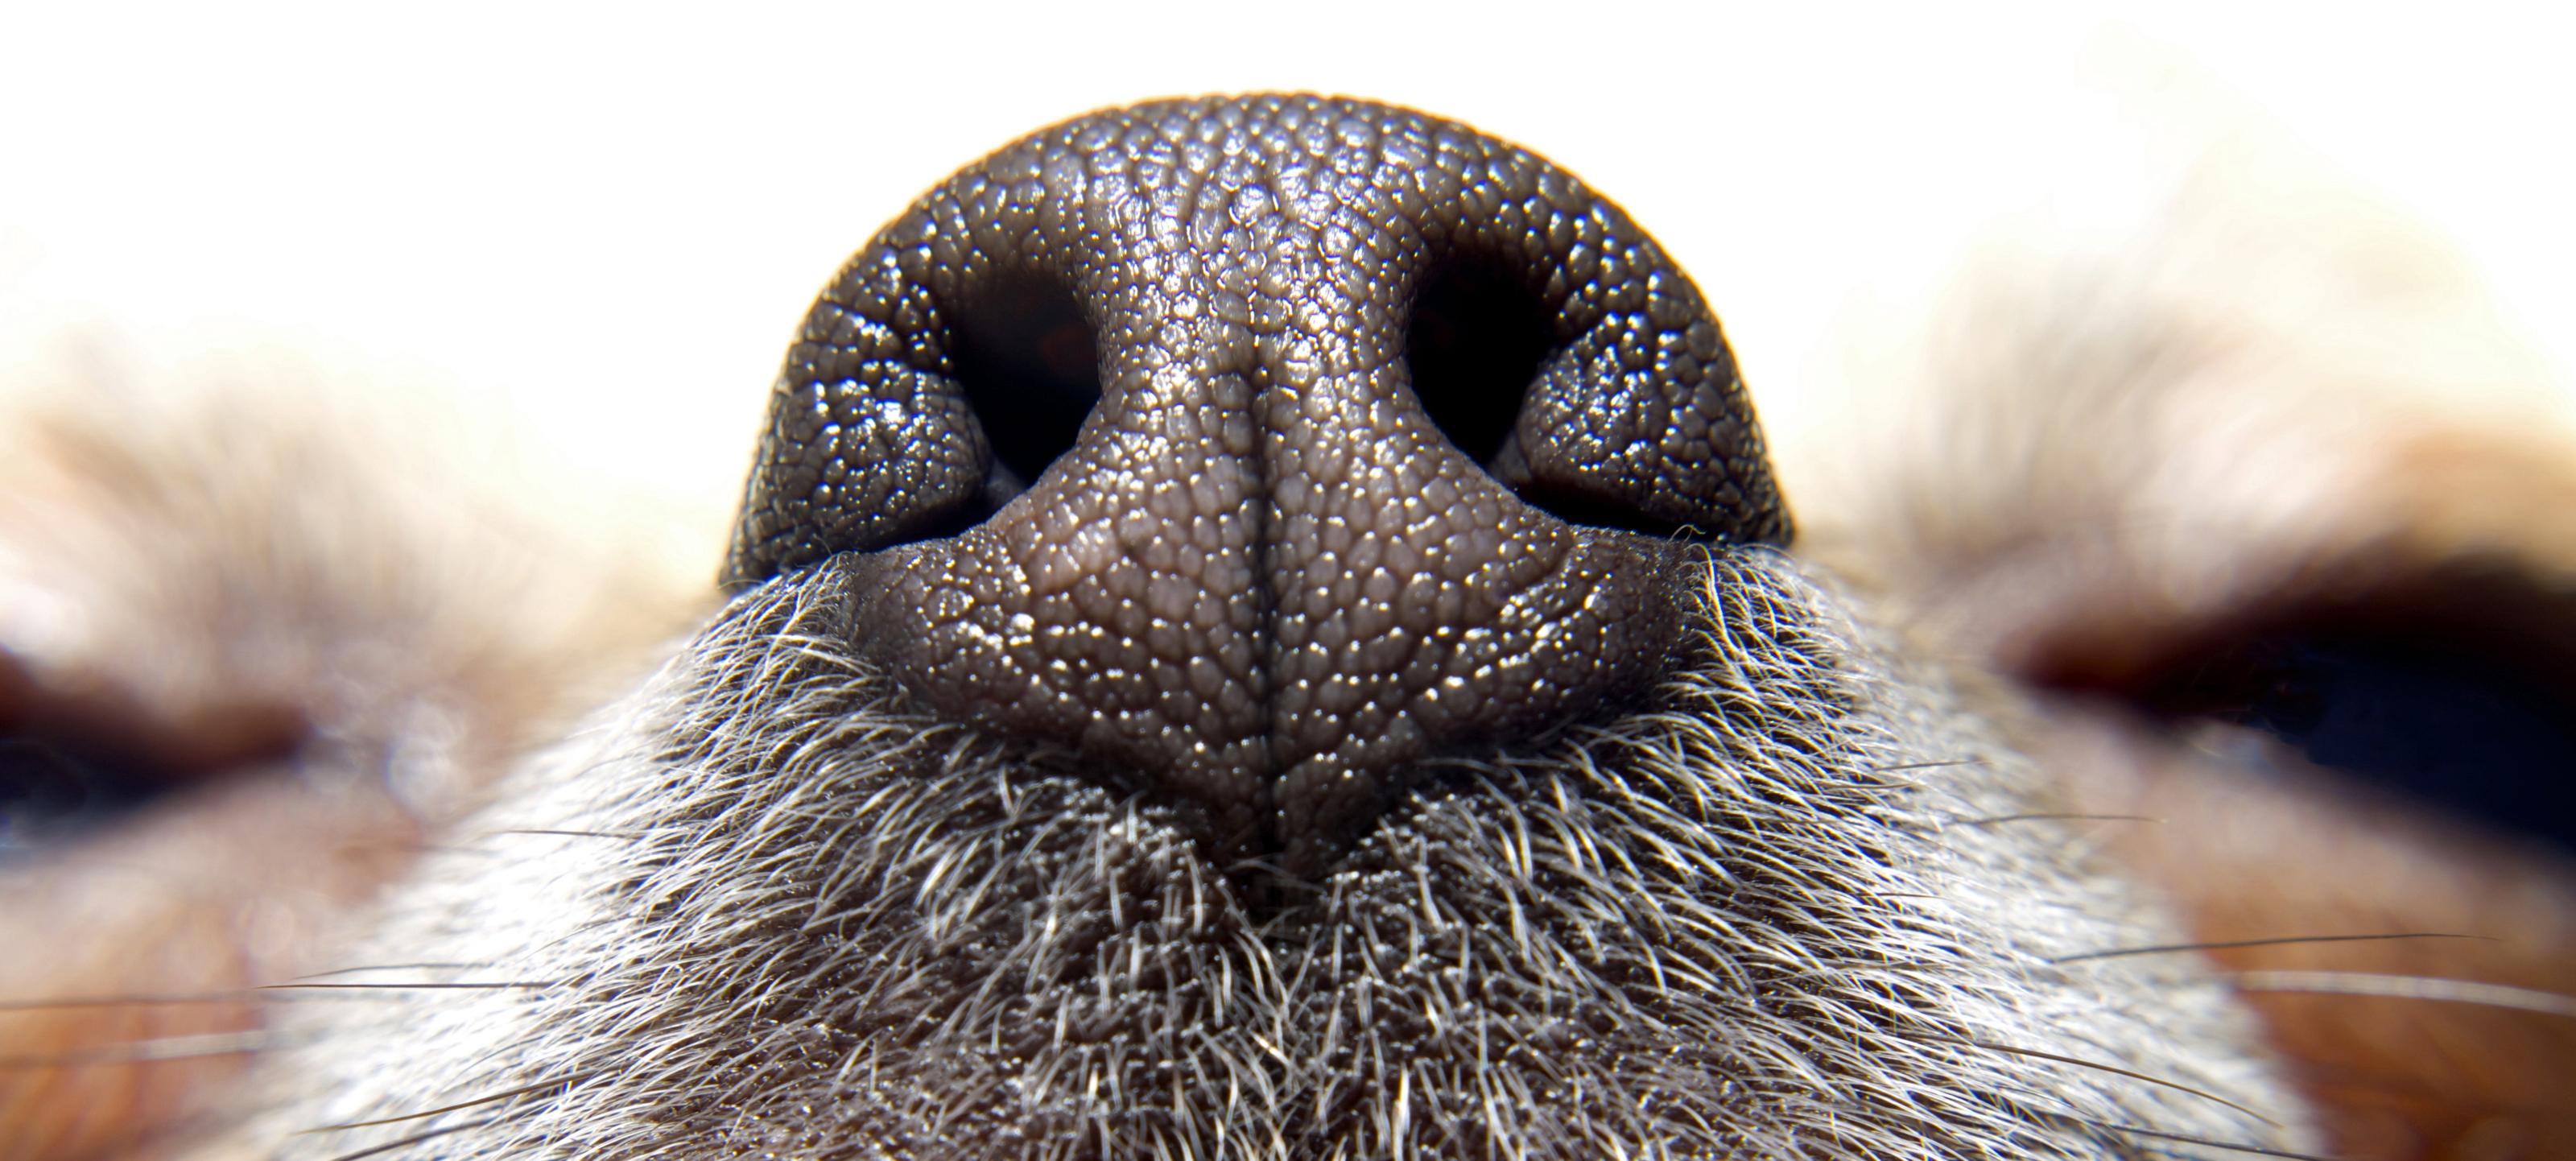 Spelen met je hond? denk eens aan neuswerk!